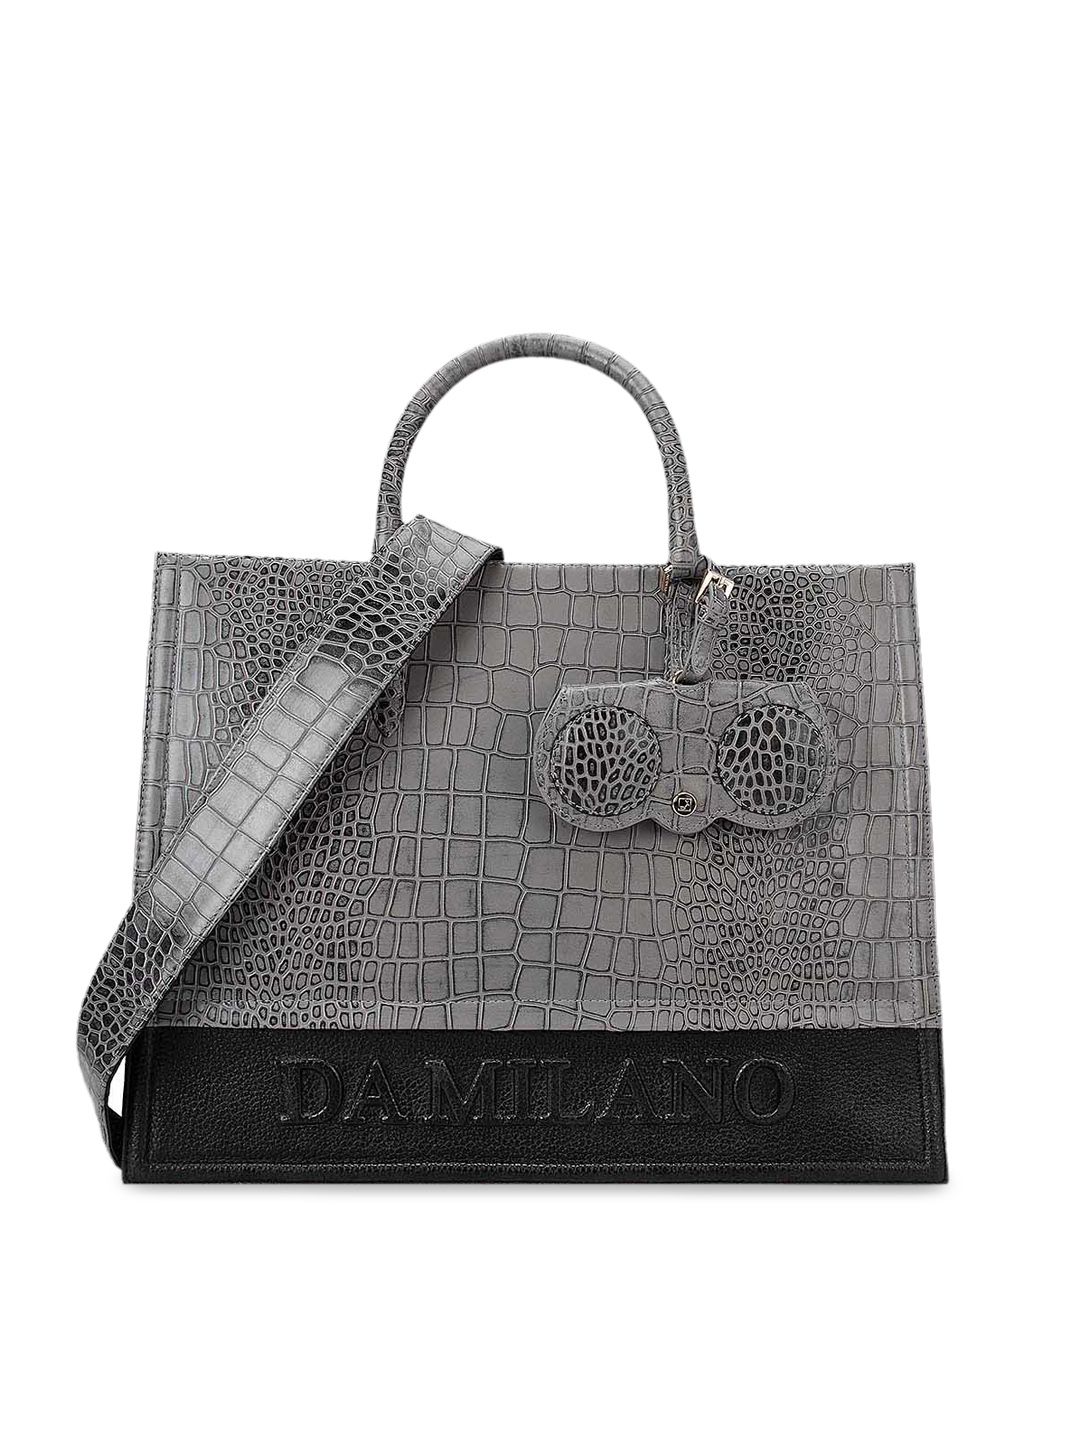 Da Milano Grey Animal Leather Oversized Shopper Handheld Bag Price in India